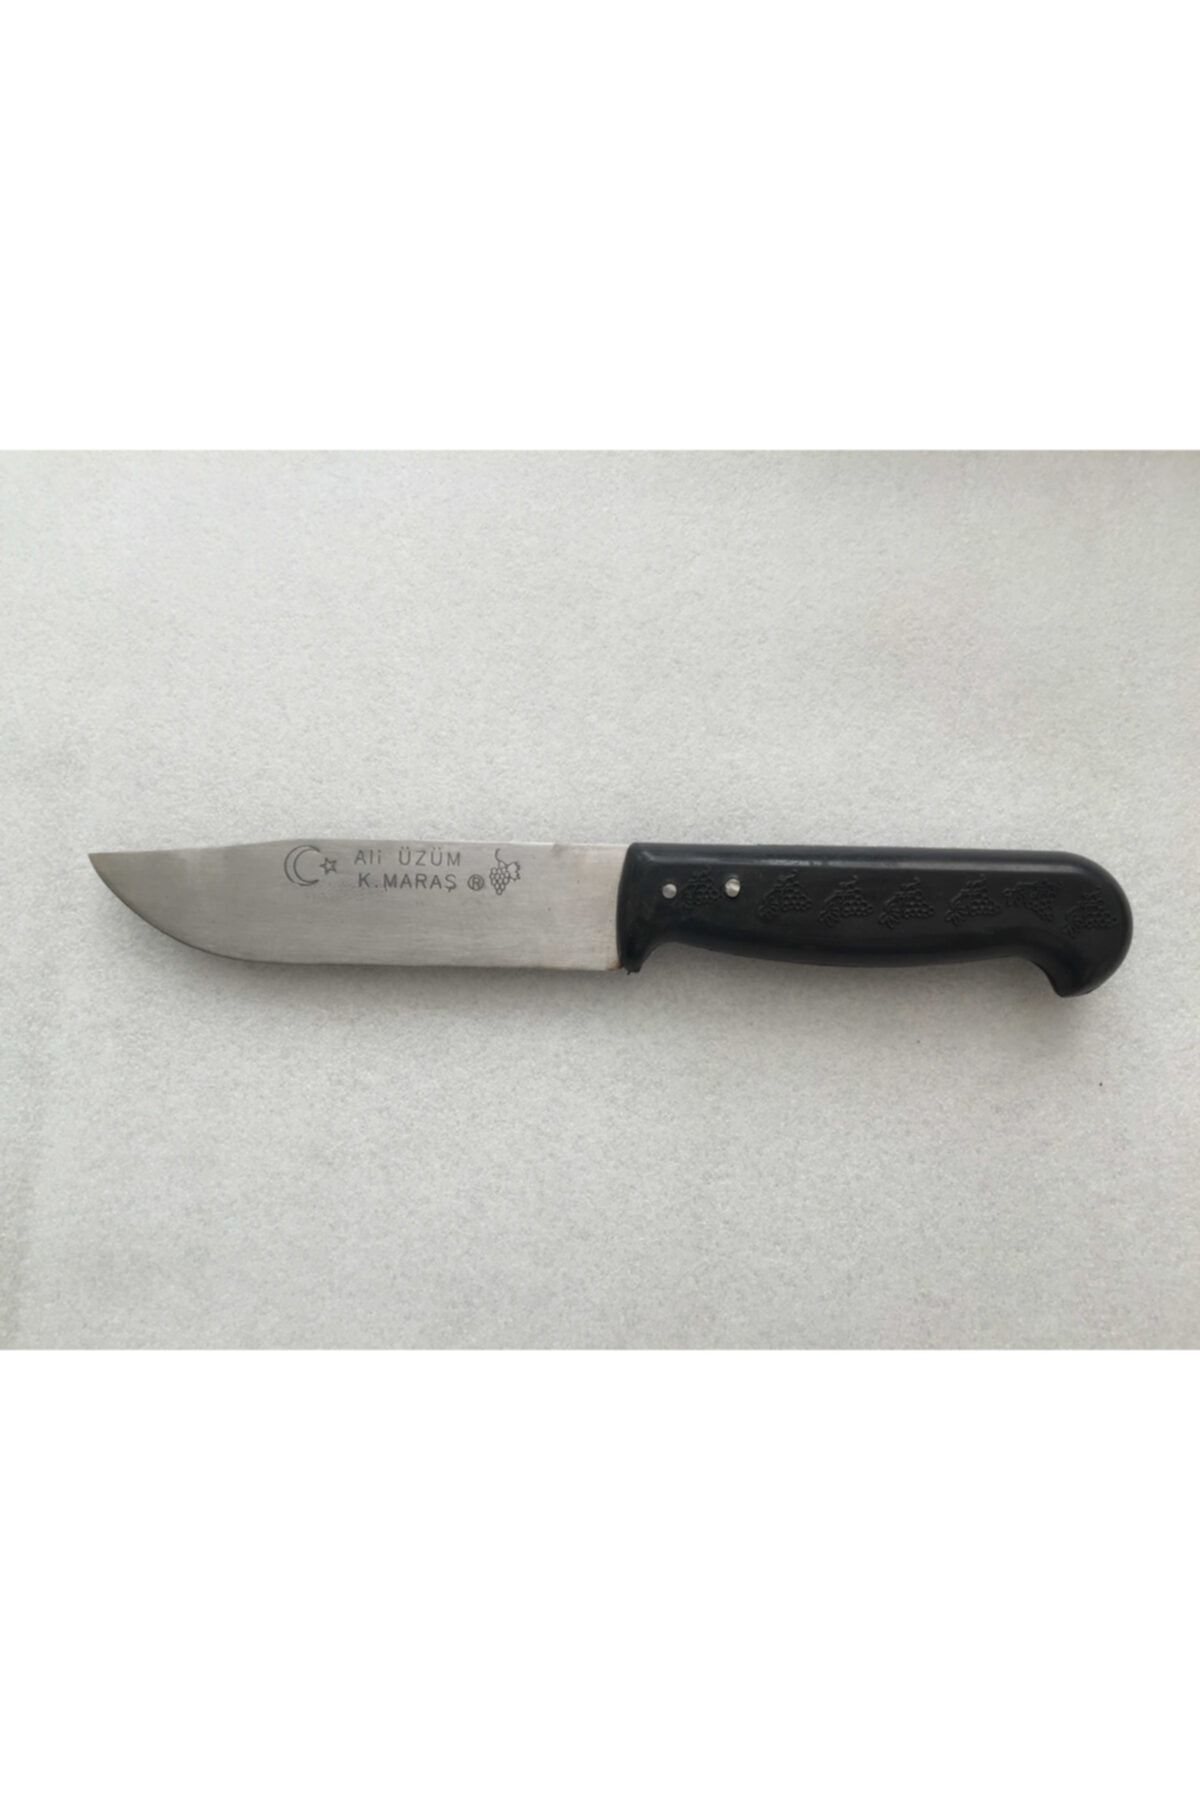 ÜZÜM ÇELİK Mobilreyon - 12 Adet Mutfak Bıçağı - Plastik Siyah Saplı Bıçak - 24cm